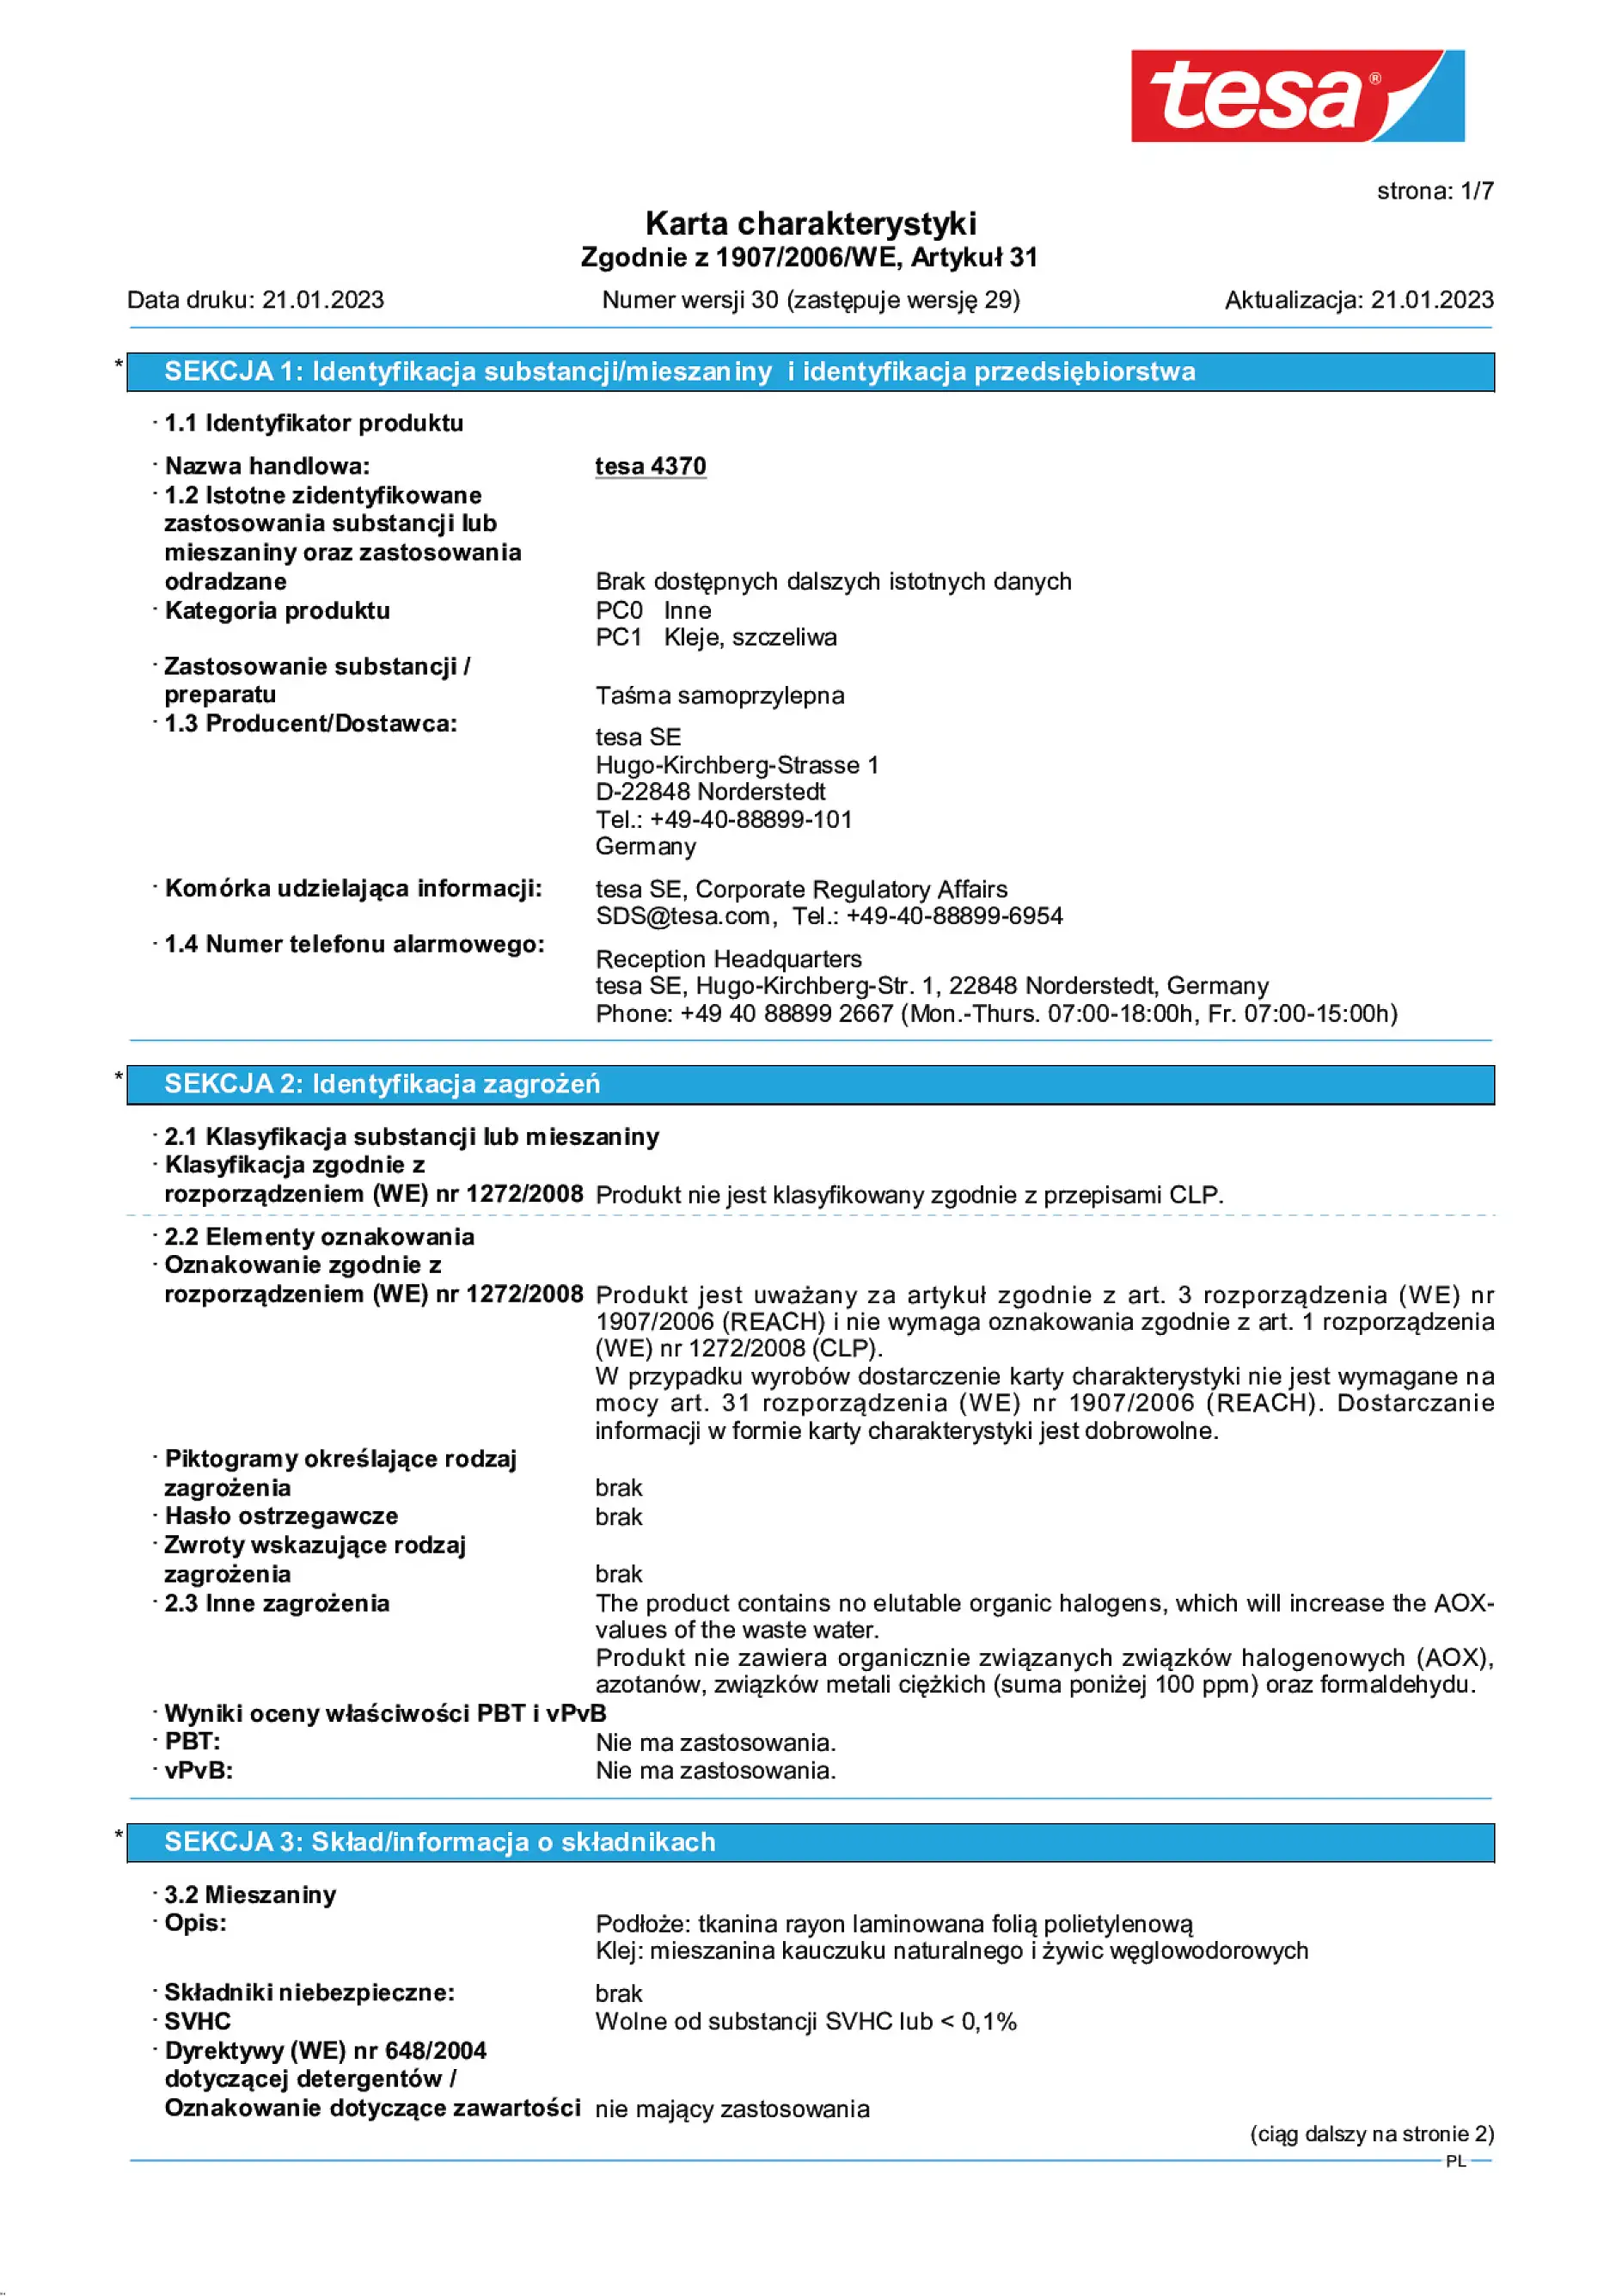 Safety data sheet_tesa® 04370_pl-PL_v30